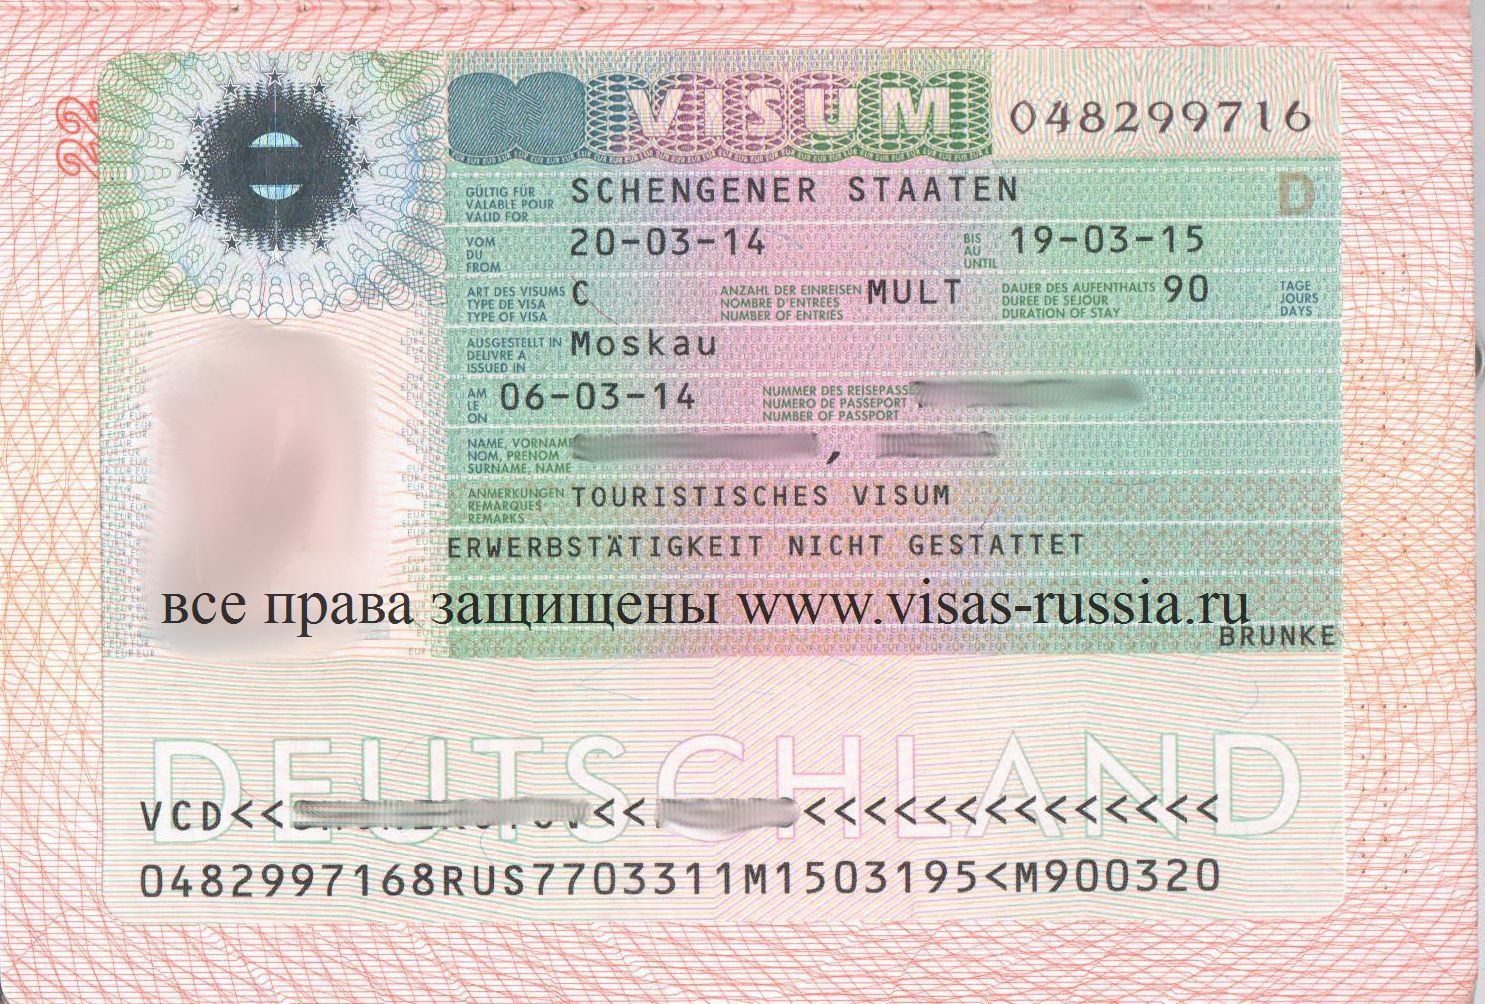 Рабочая виза в германию: как получить и сколько стоит оформить трудовую немецкую визу для украинцев и россиян?